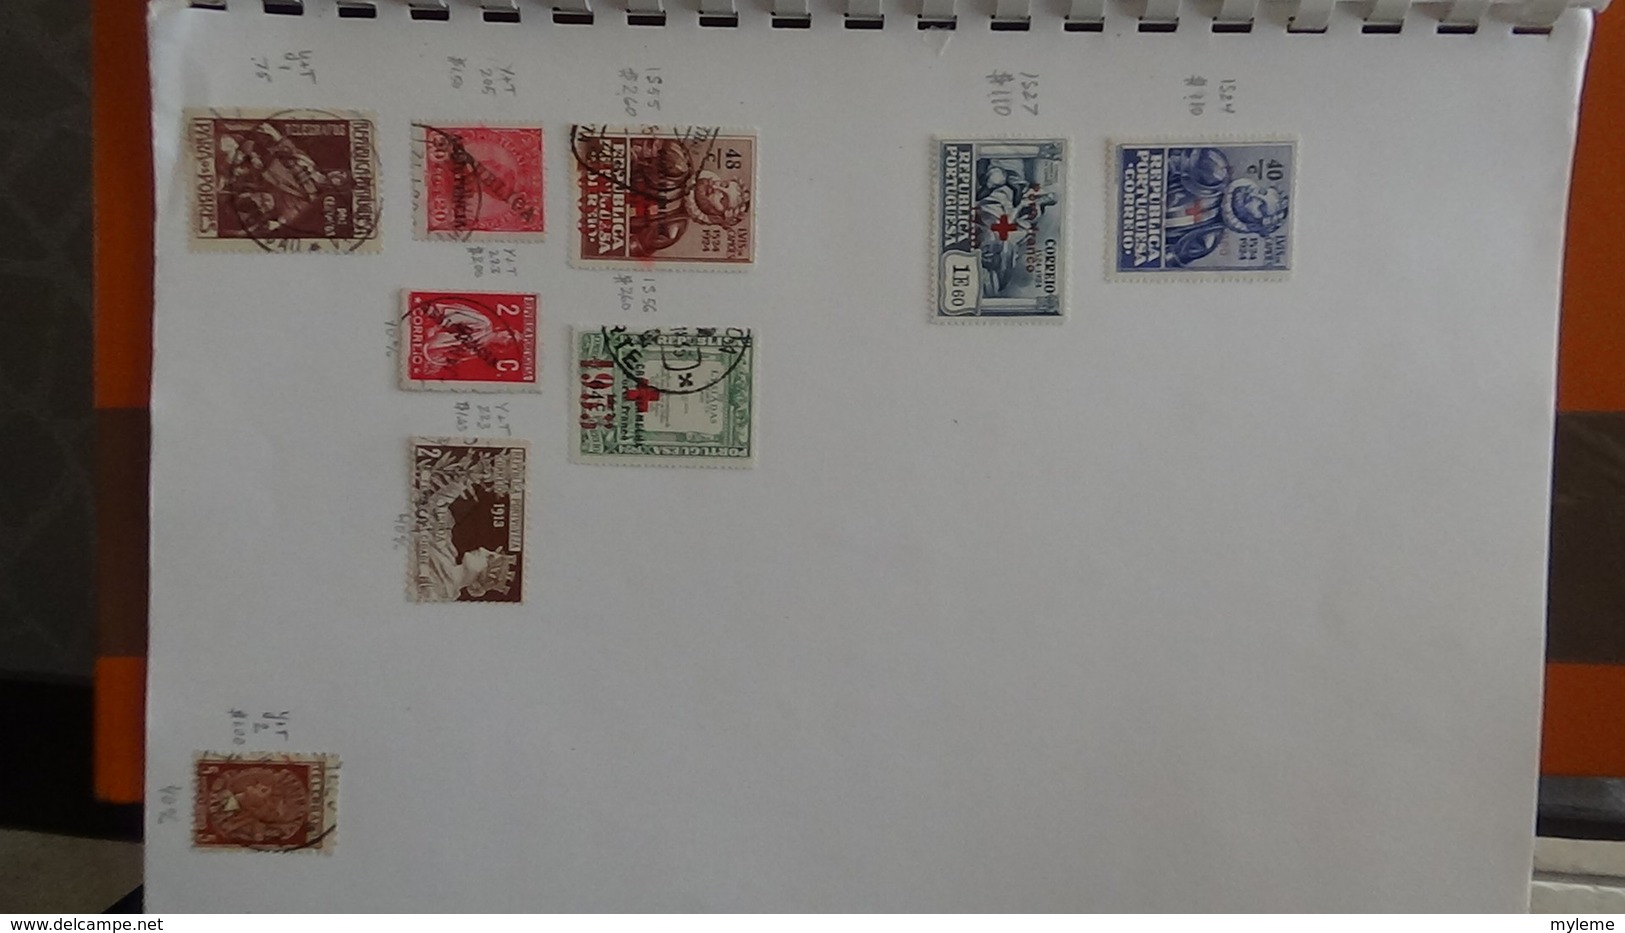 A255 Cahier de timbres du Portugal  !!! Voir commentaires